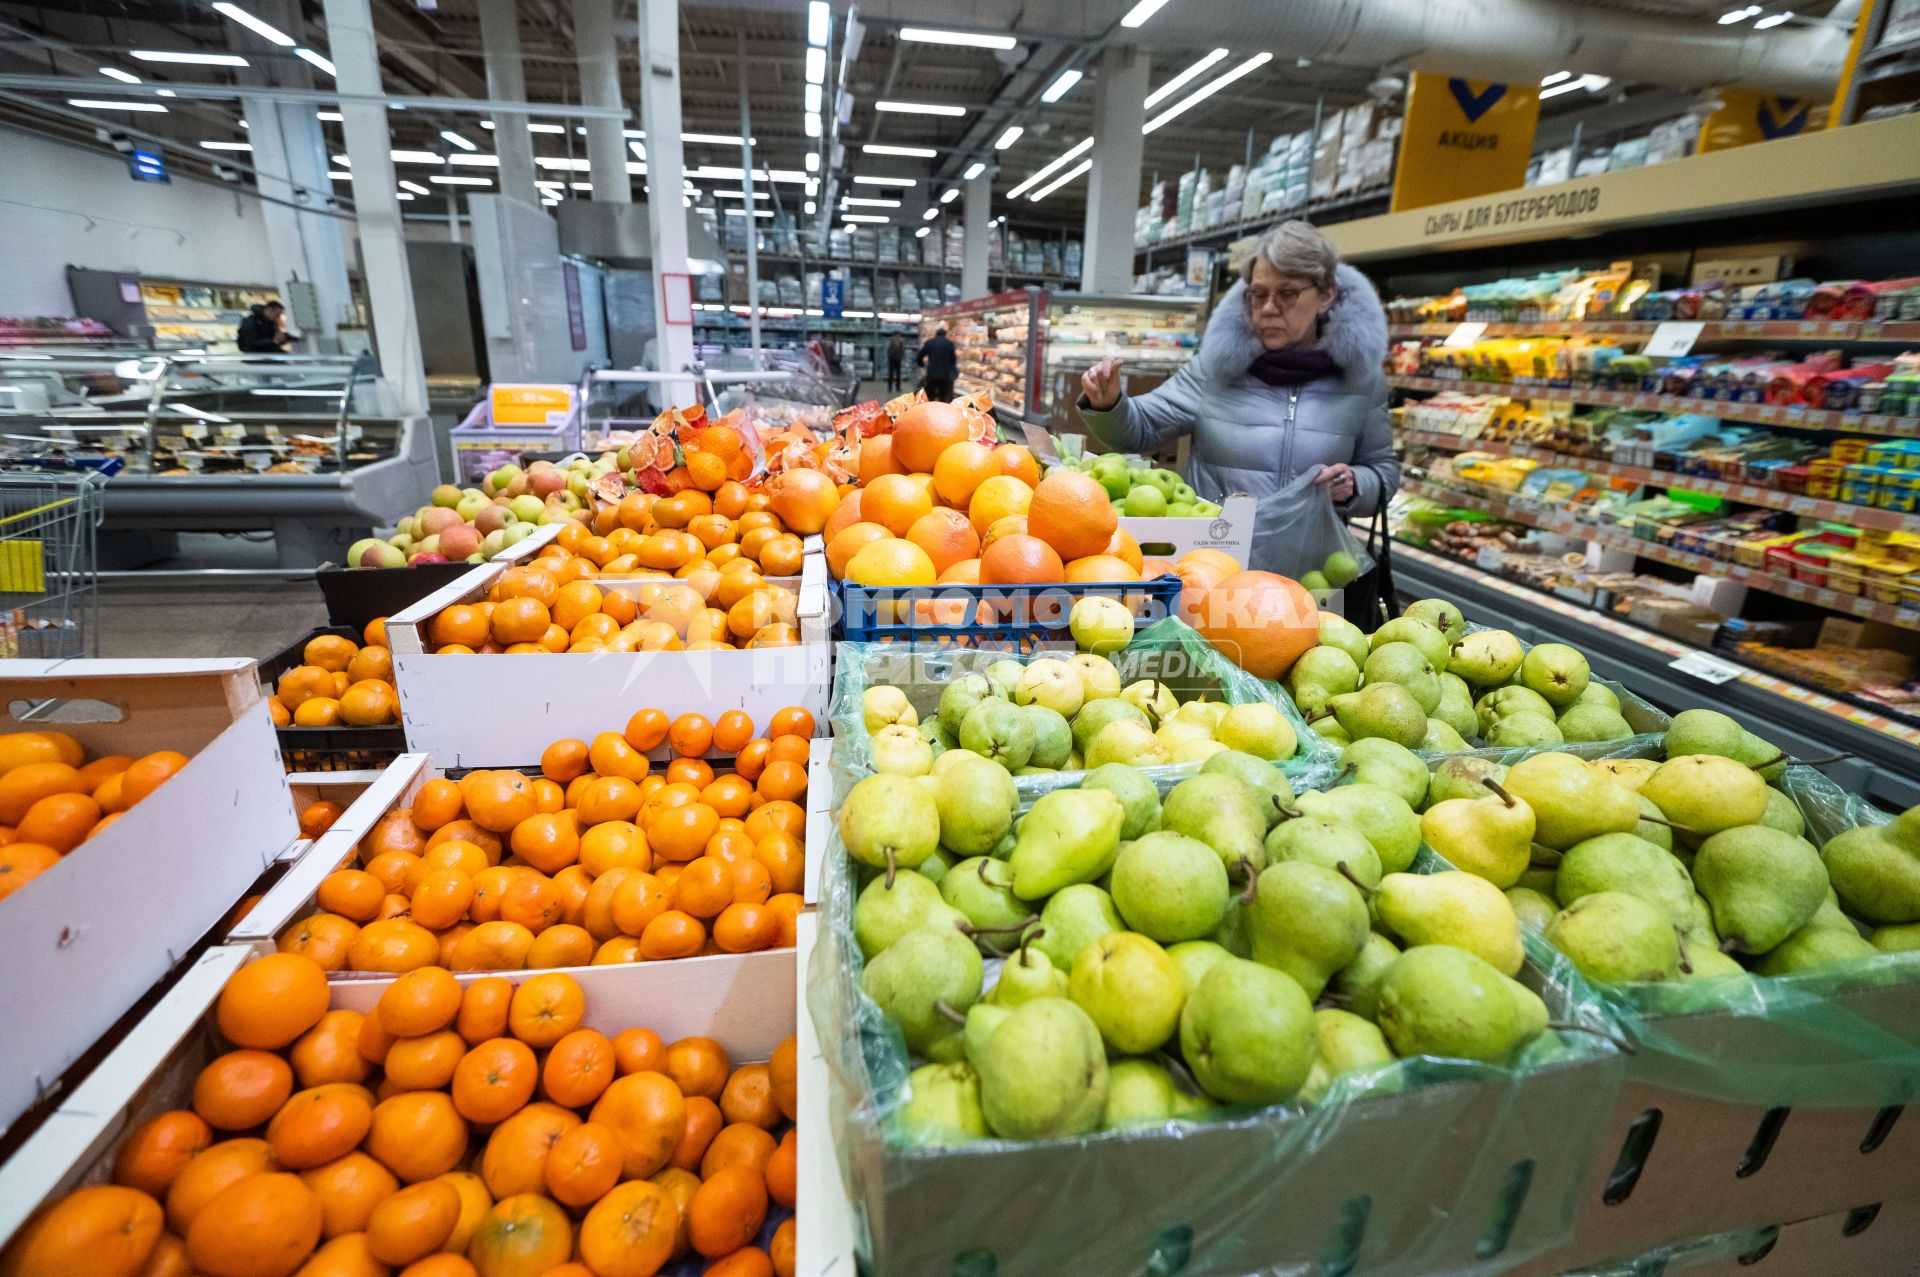 Санкт-Петербург. Женщина выбирает фрукты в супермаркете.